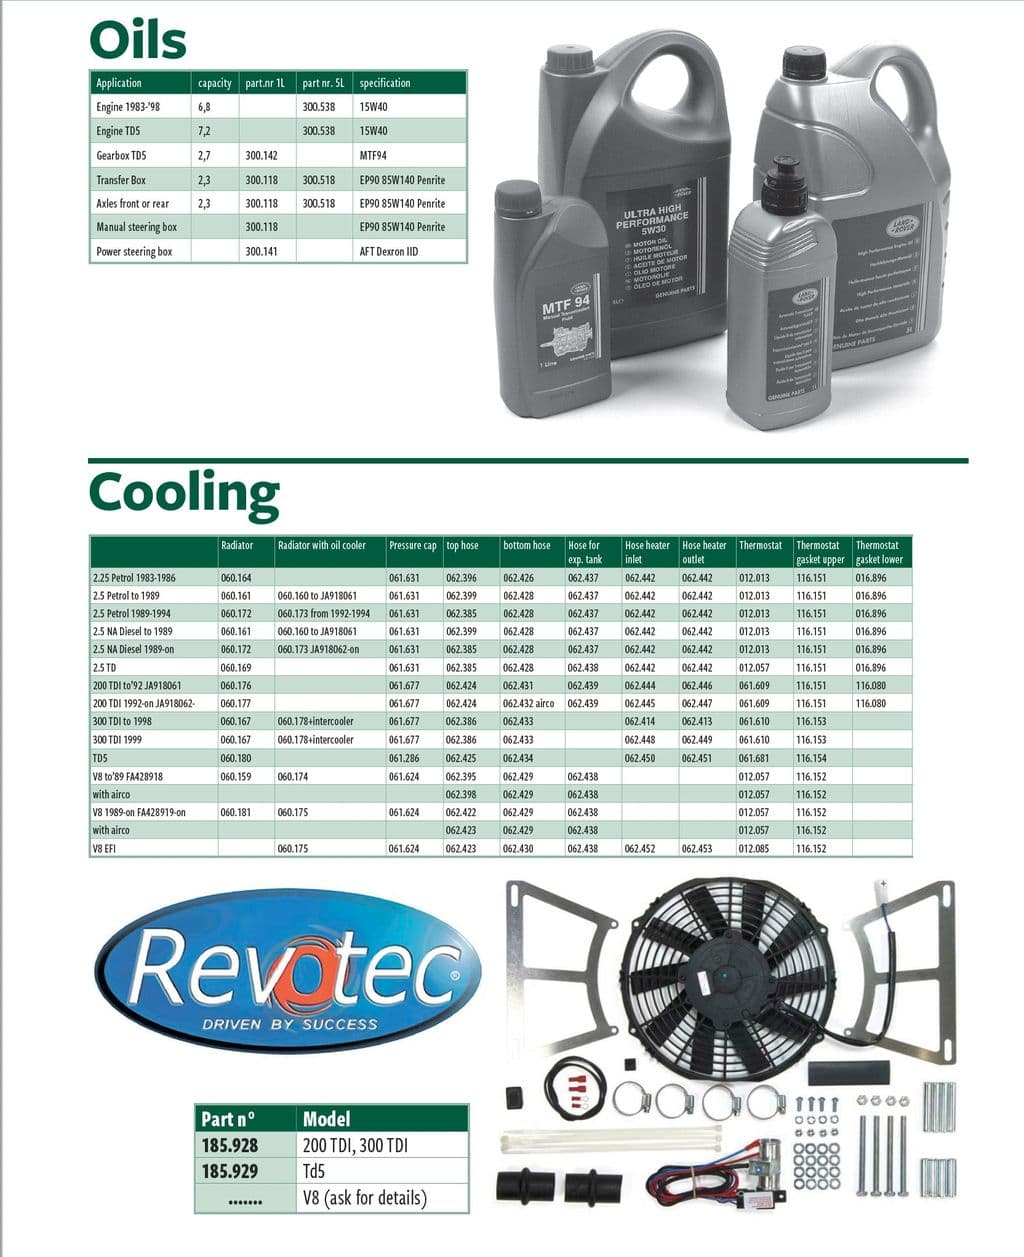 Oils & cooling - Engine aufrüstung der Kühlung - Motorkühlung - Land Rover Defender 90-110 1984-2006 - Oils & cooling - 1